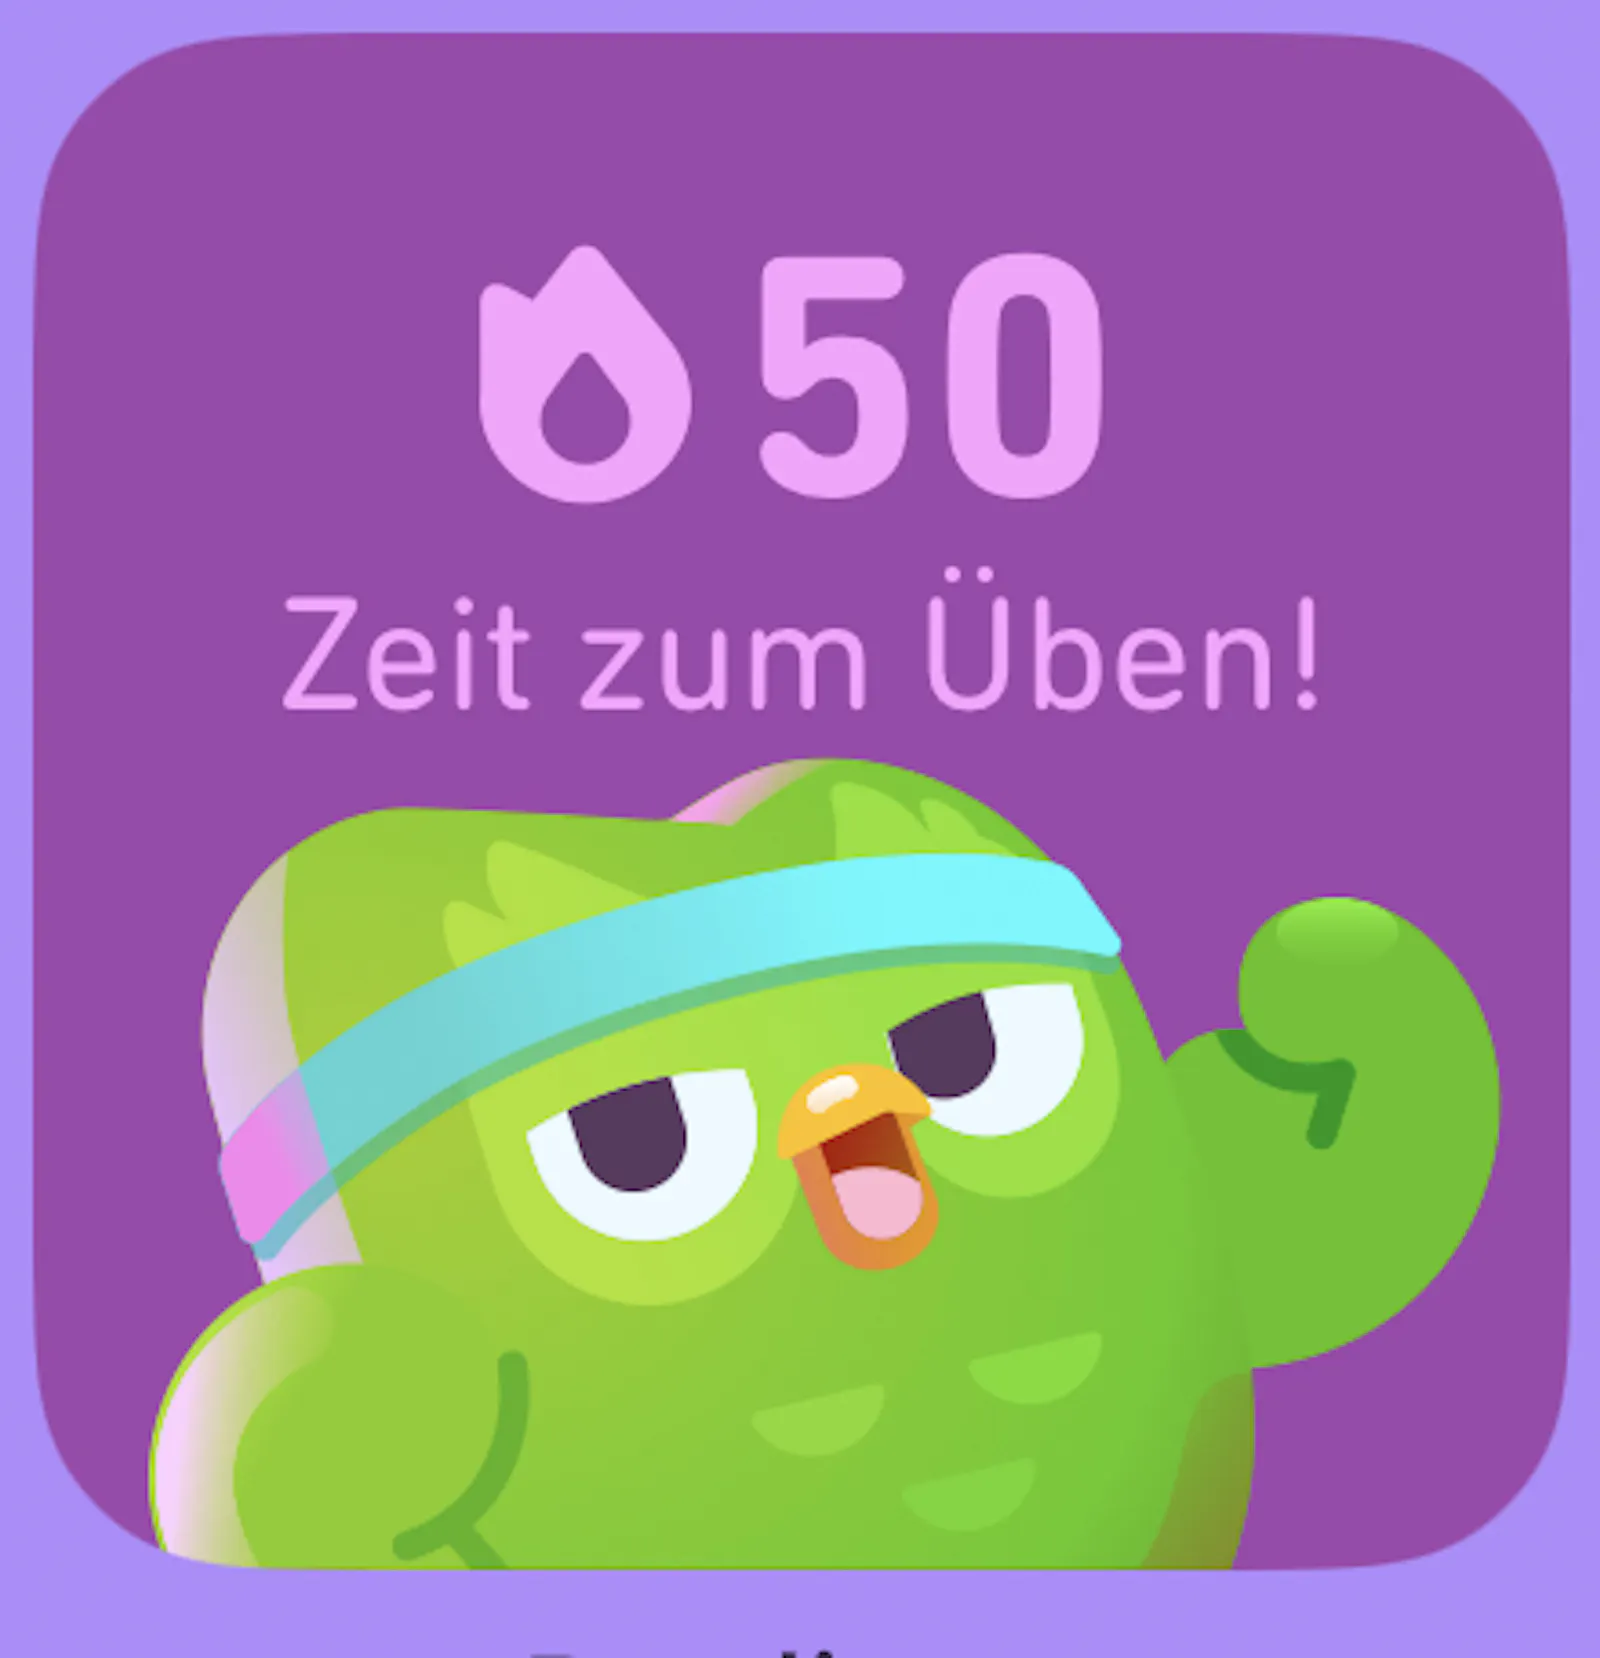 Duolingo-Eule ermahnt zum Üben